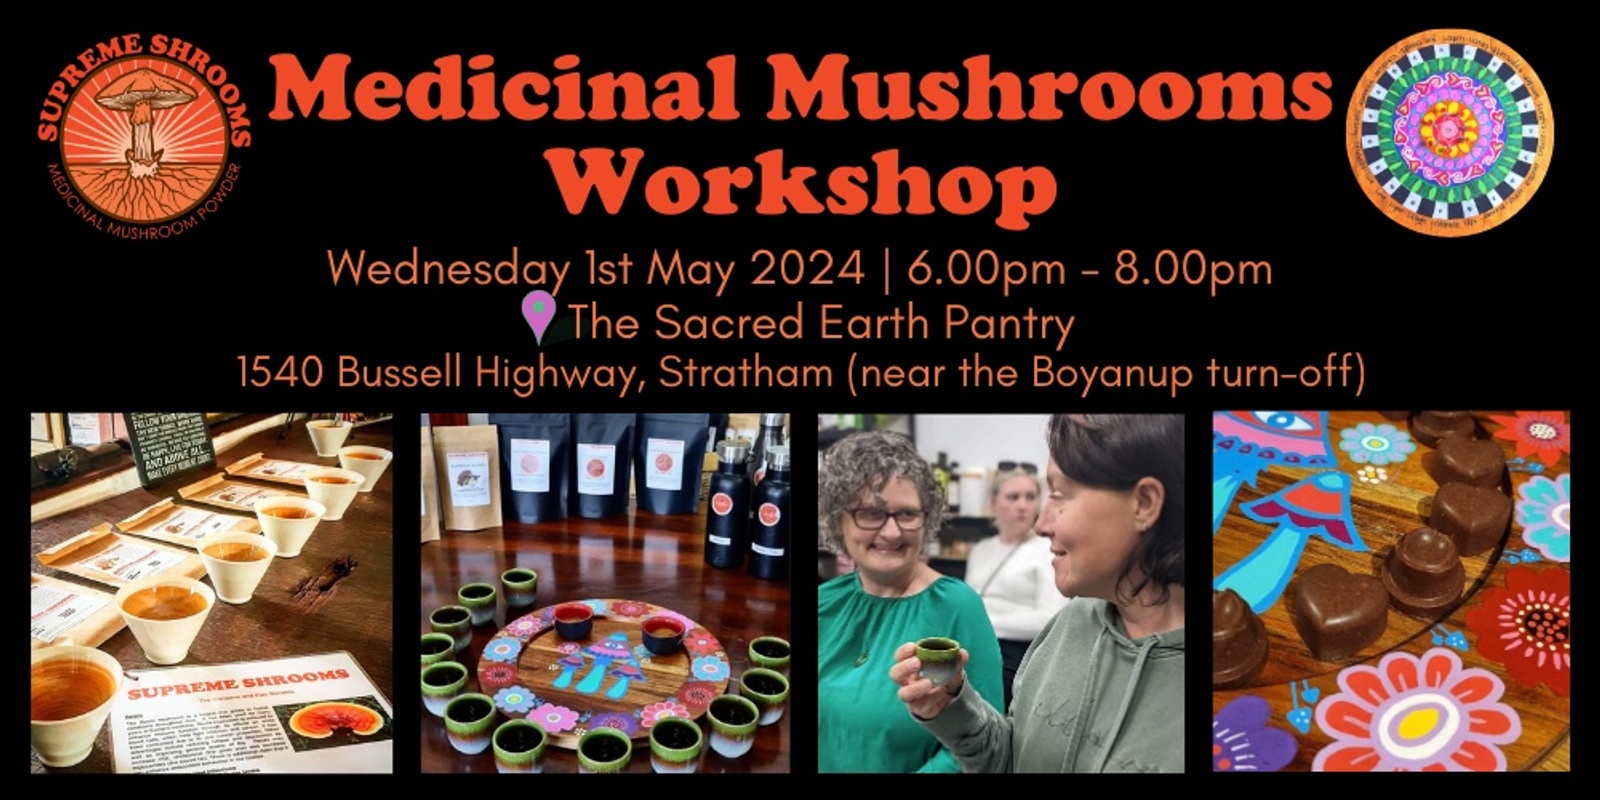 Banner image for Medicinal Mushrooms Workshop in Stratham, WA